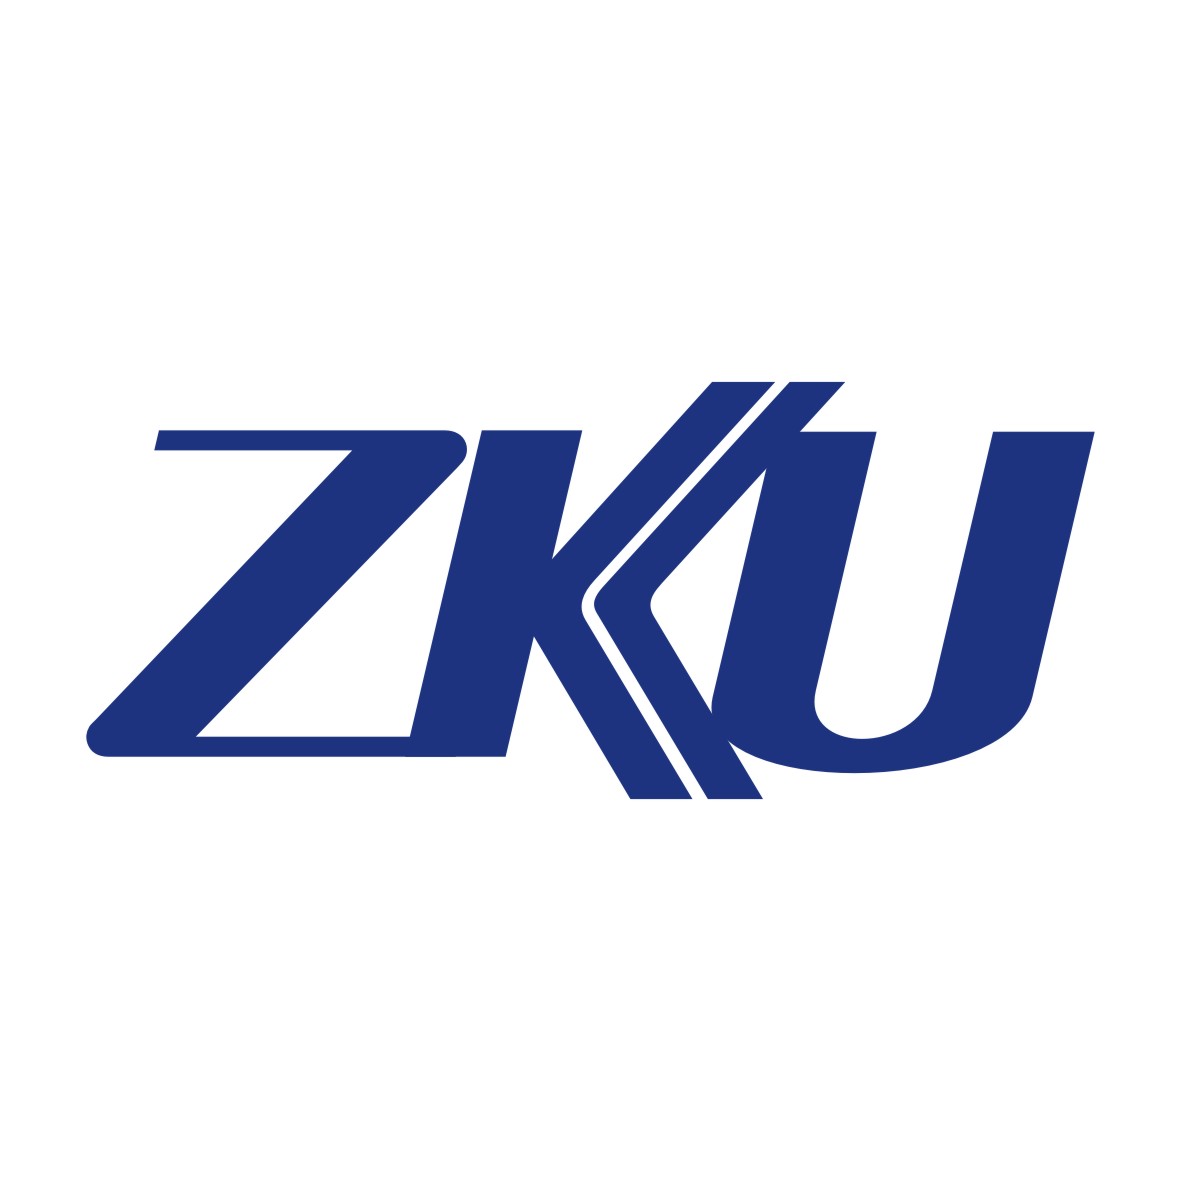 广州市龙曦生物科技有限公司商标ZKU（26类）商标买卖平台报价，上哪个平台最省钱？